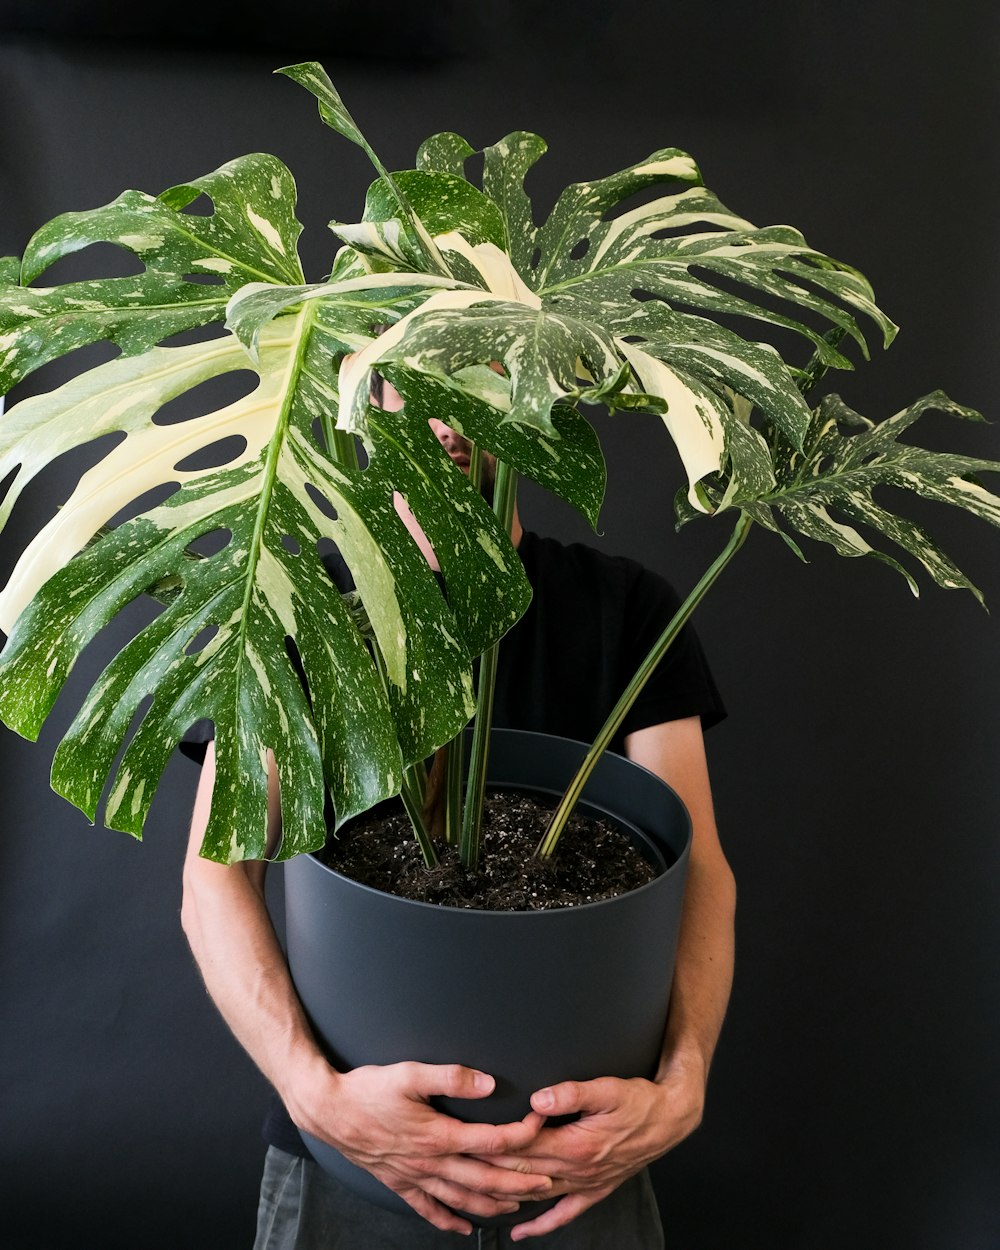 una persona sosteniendo una planta en maceta